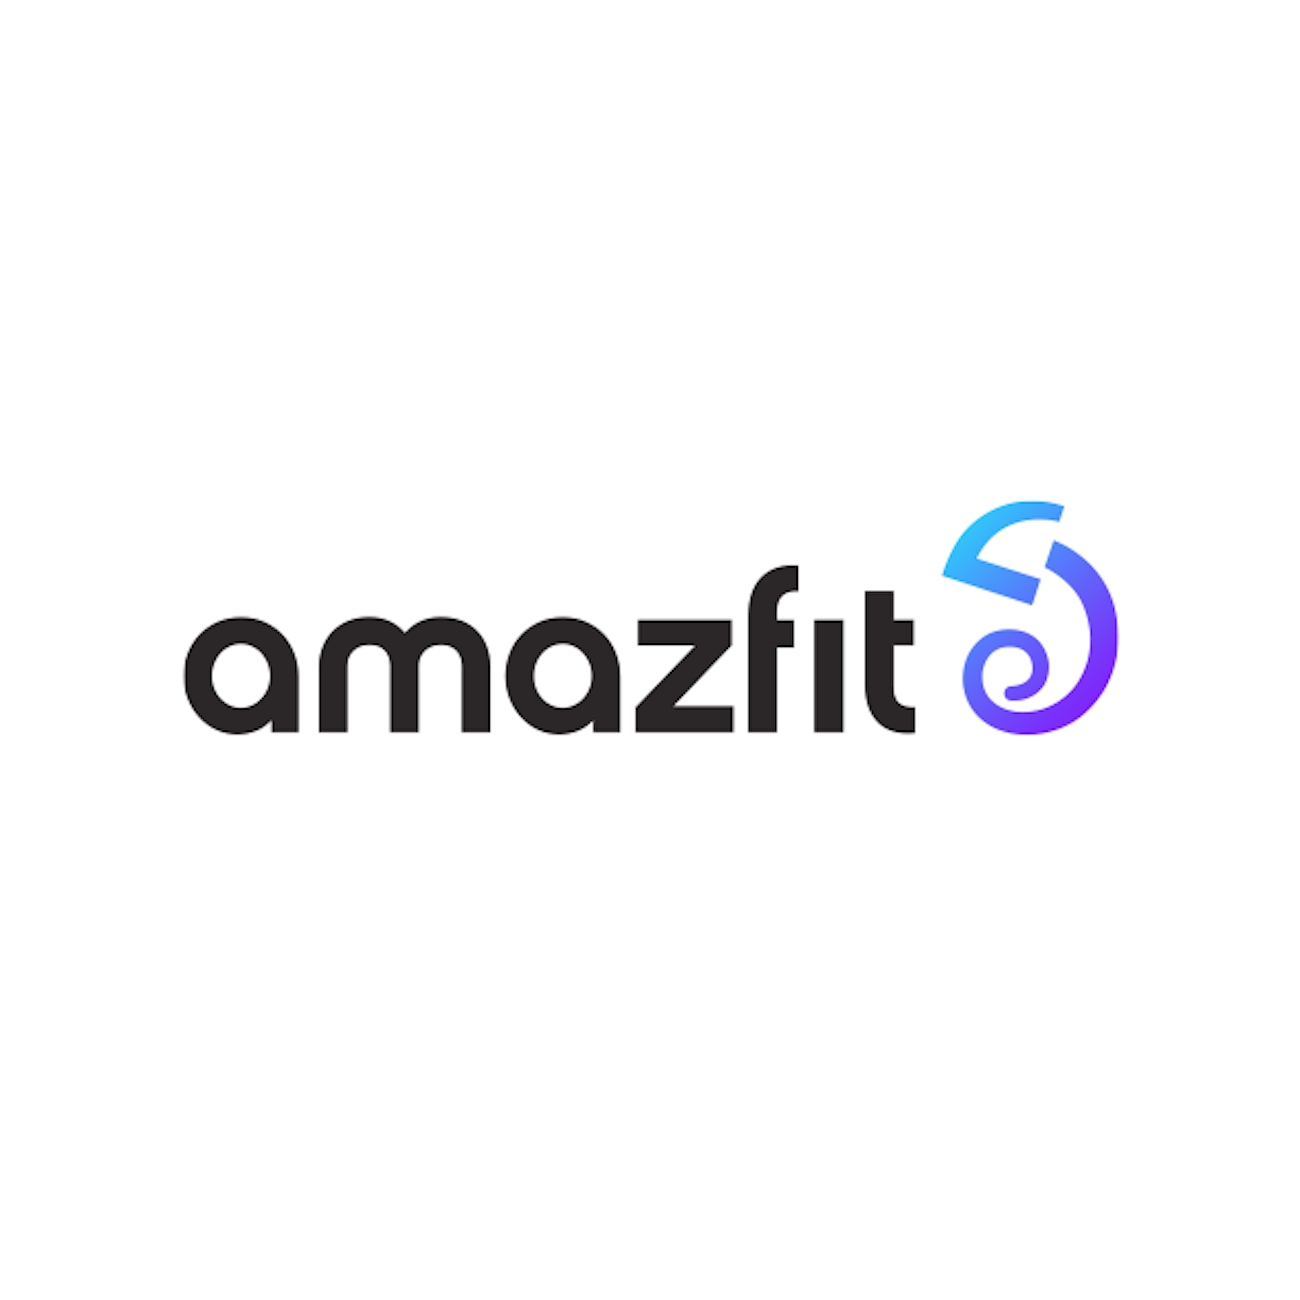 Amazfit má novou verzi hodinek GTS 2